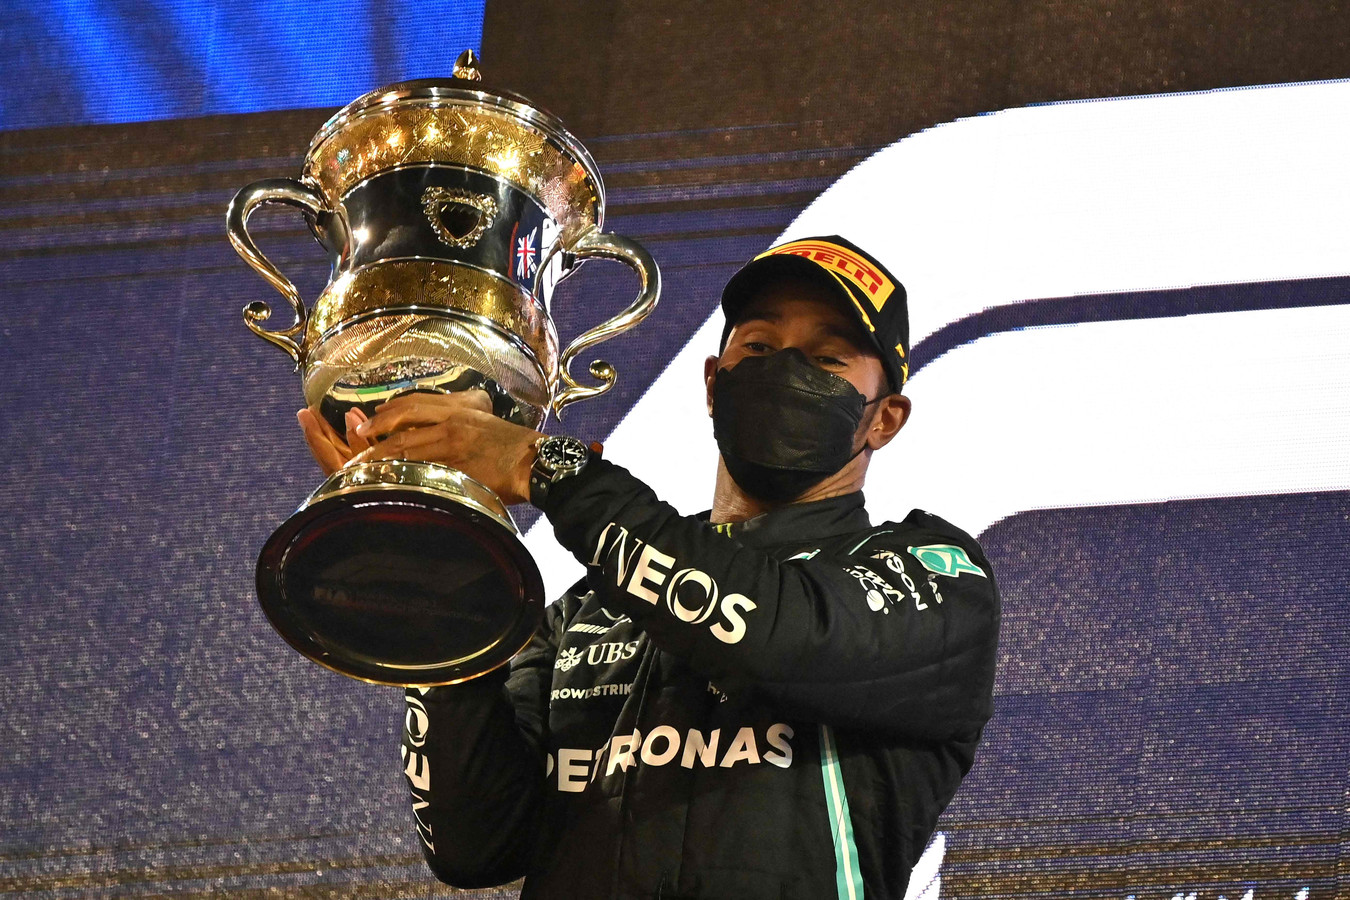 Lewis Hamilton is opgelucht na zijn winst in Bahrein.